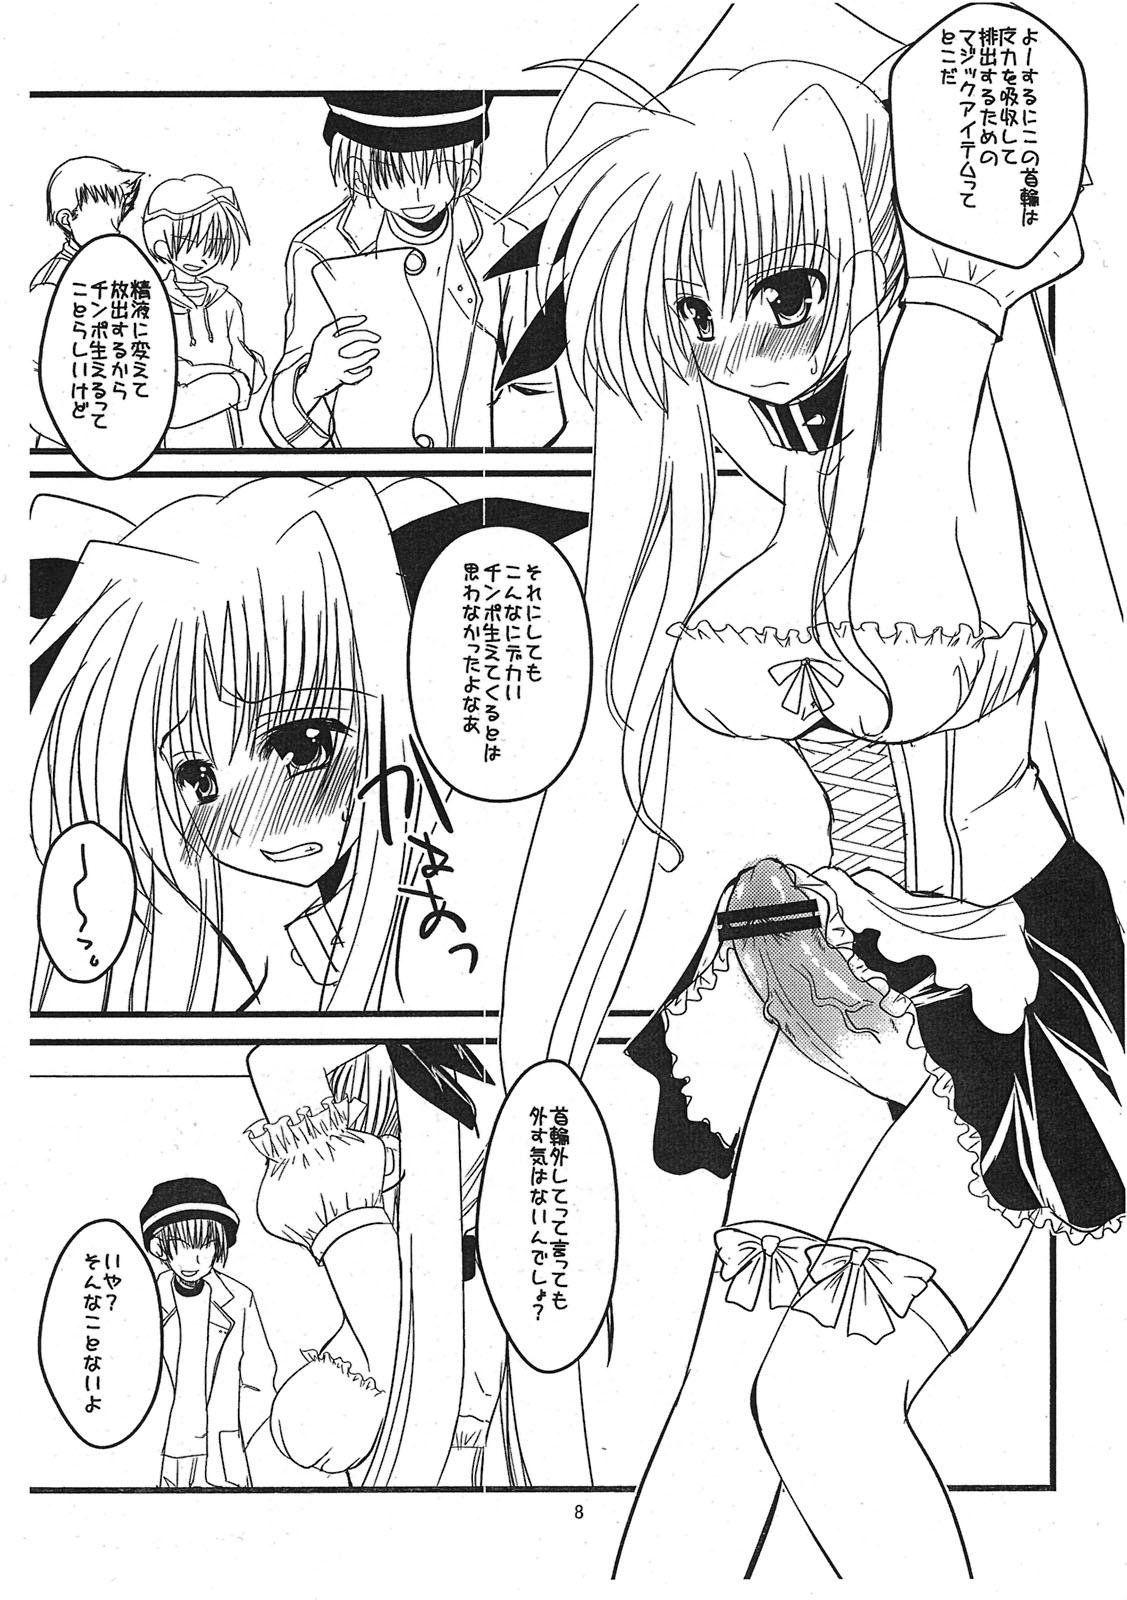 Humiliation Pov Sore wa Futanari Shoujo nano ver.0.8 - Mahou shoujo lyrical nanoha Gay Outinpublic - Page 8